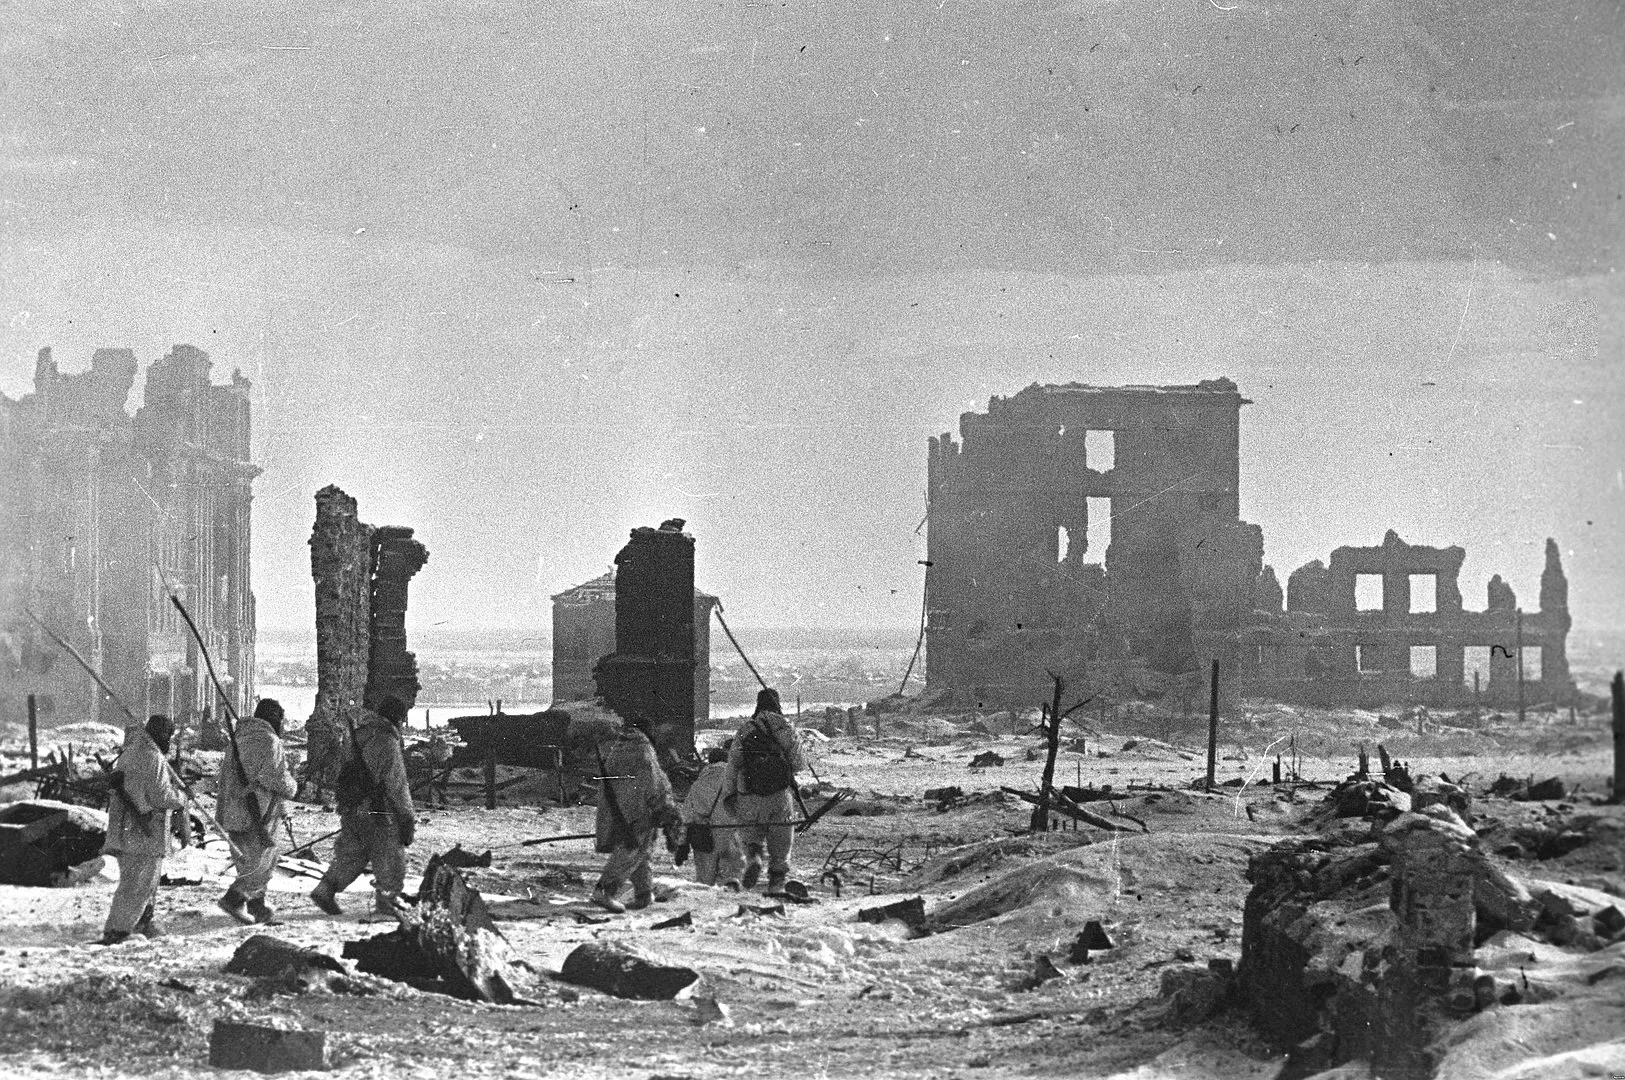 El centre de la ciutat de Stalingrad després de la victòria soviètica